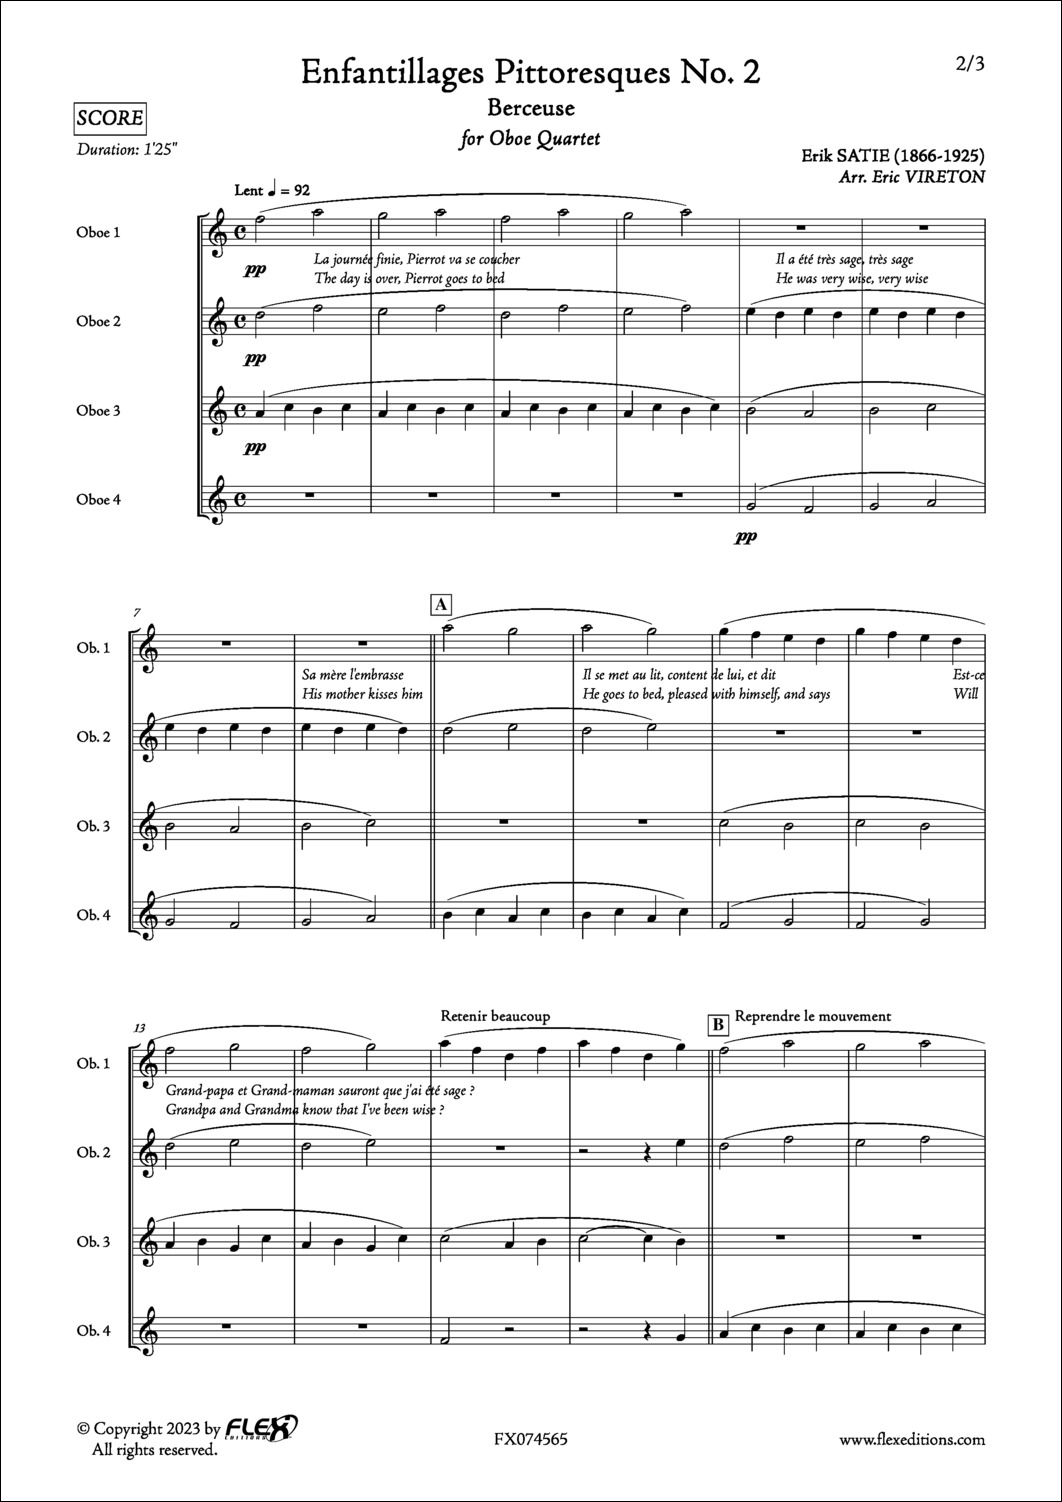 Enfantillages Pittoresques No. 2 - Berceuse - E. SATIE - <font color=#666666>Oboe Quartet</font>